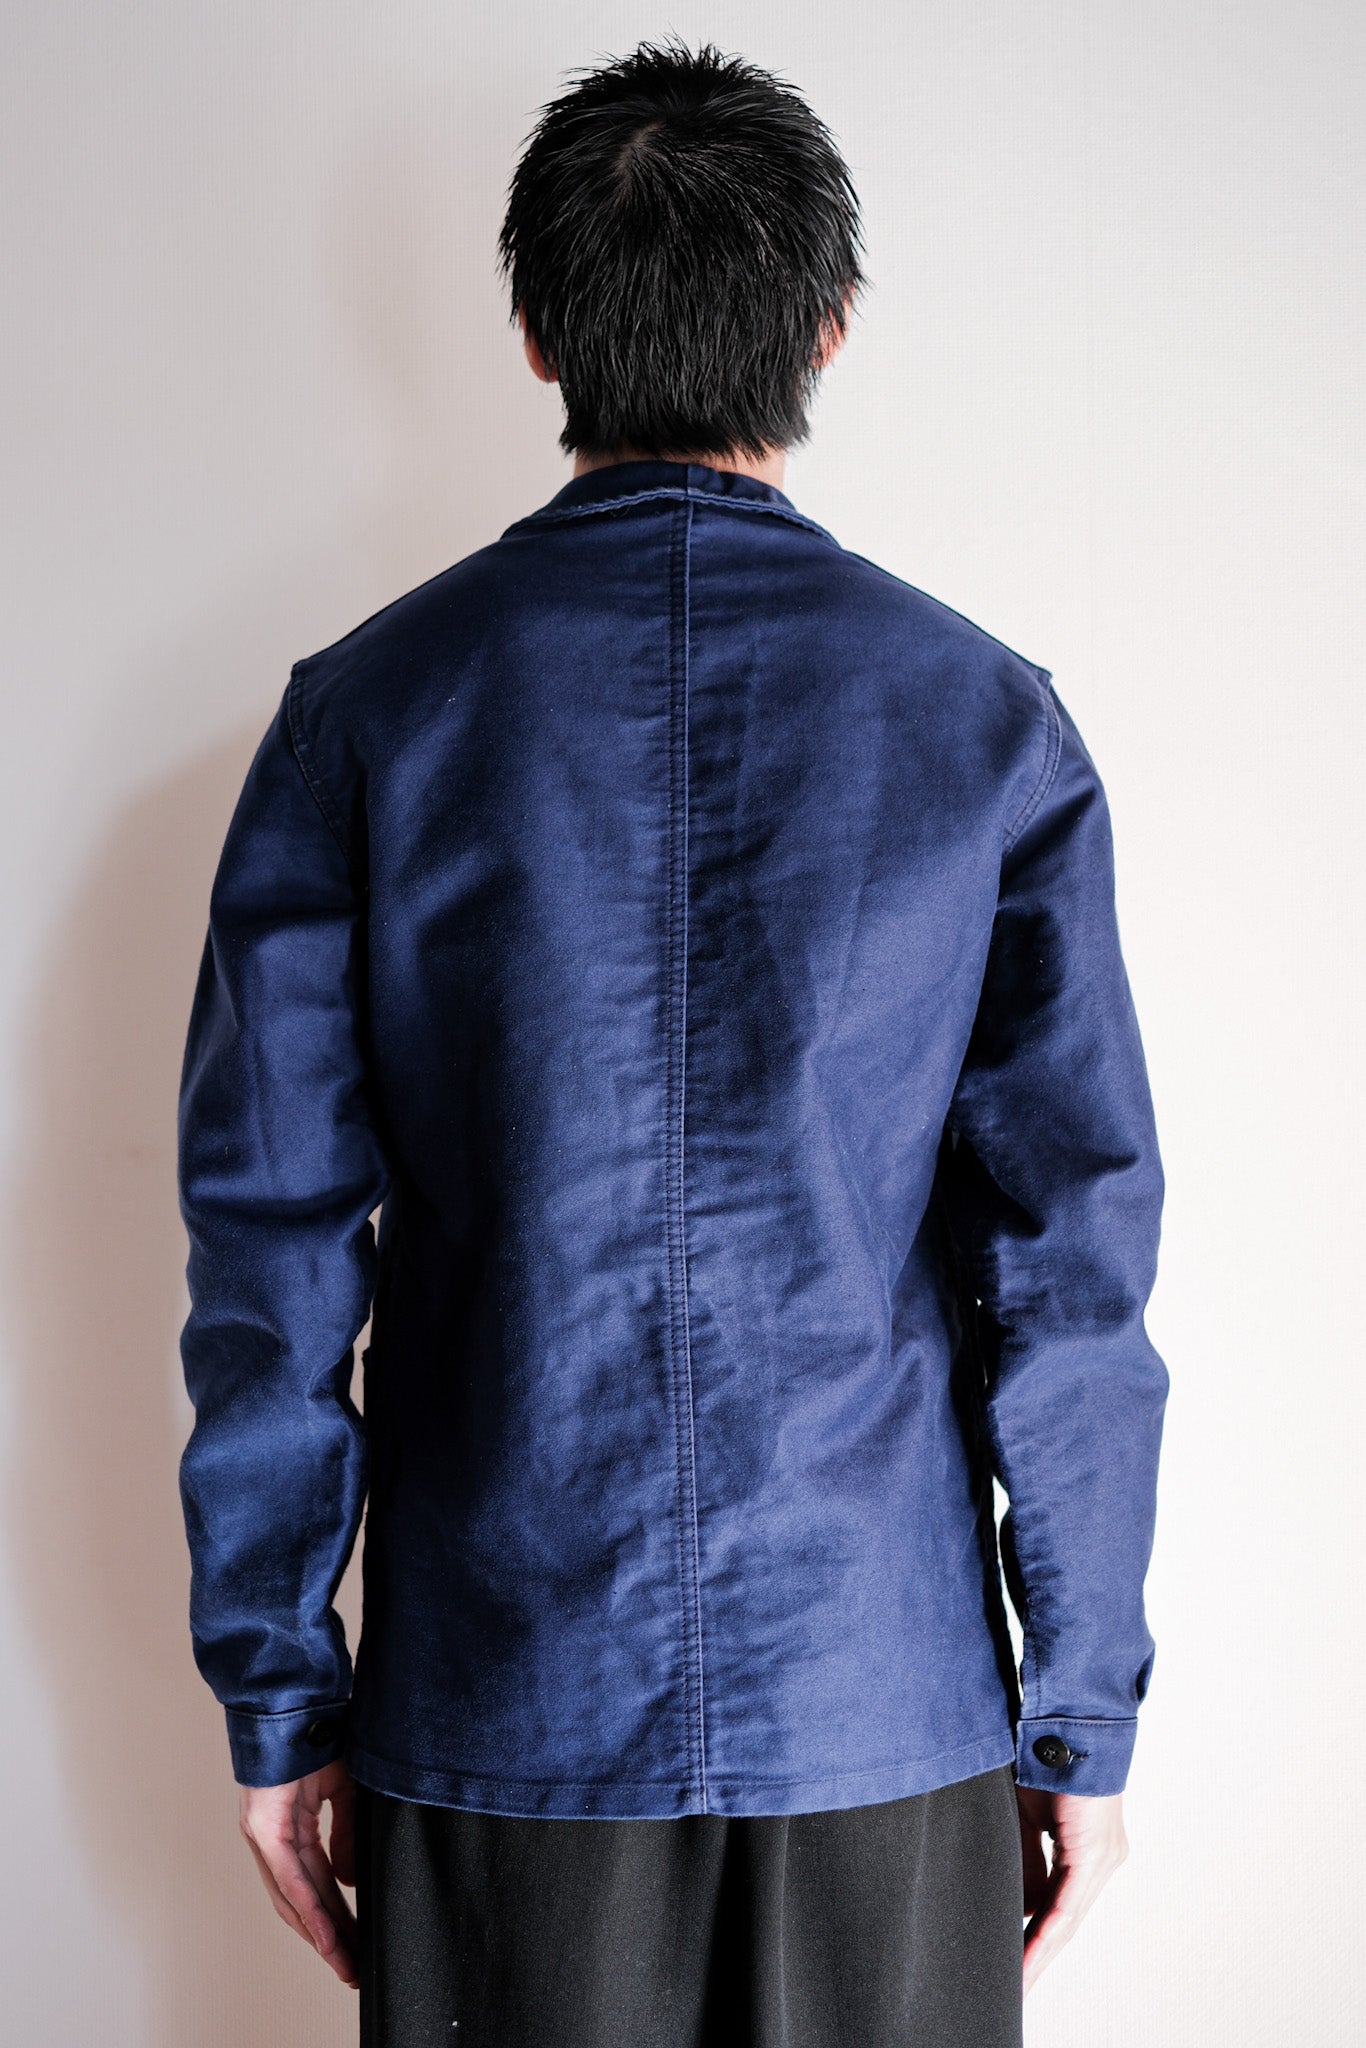 [〜70年代]法國復古藍色摩爾斯金夾克夾克尺寸。40“ le montstart。Michel”